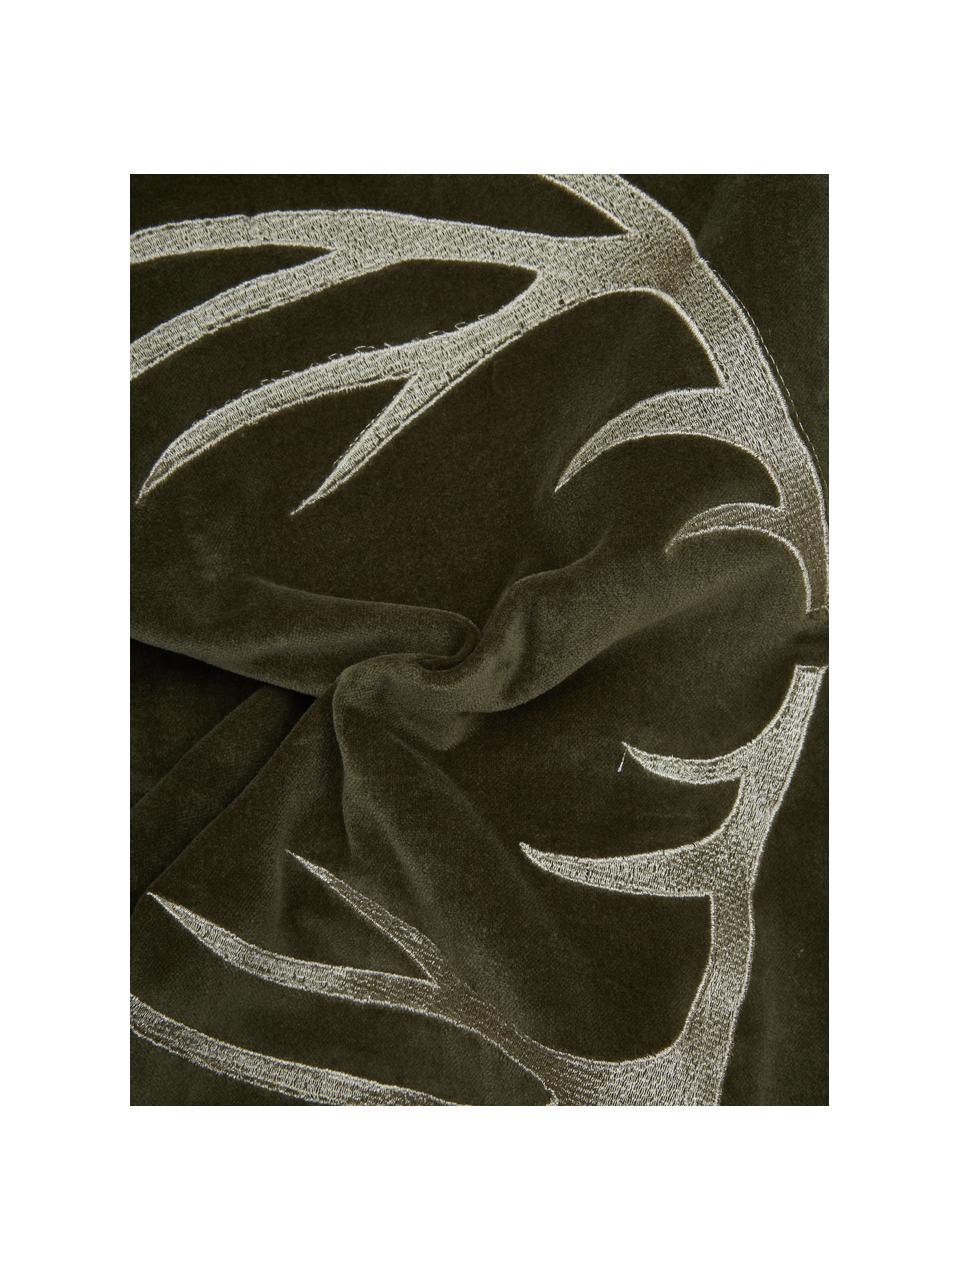 Samt-Kissen Embroidered Antler mit Hirsch-Motiv in Olivegrün, Bezug: 100% Baumwollsamt, Olivegrün, Weiss, B 30 x L 50 cm